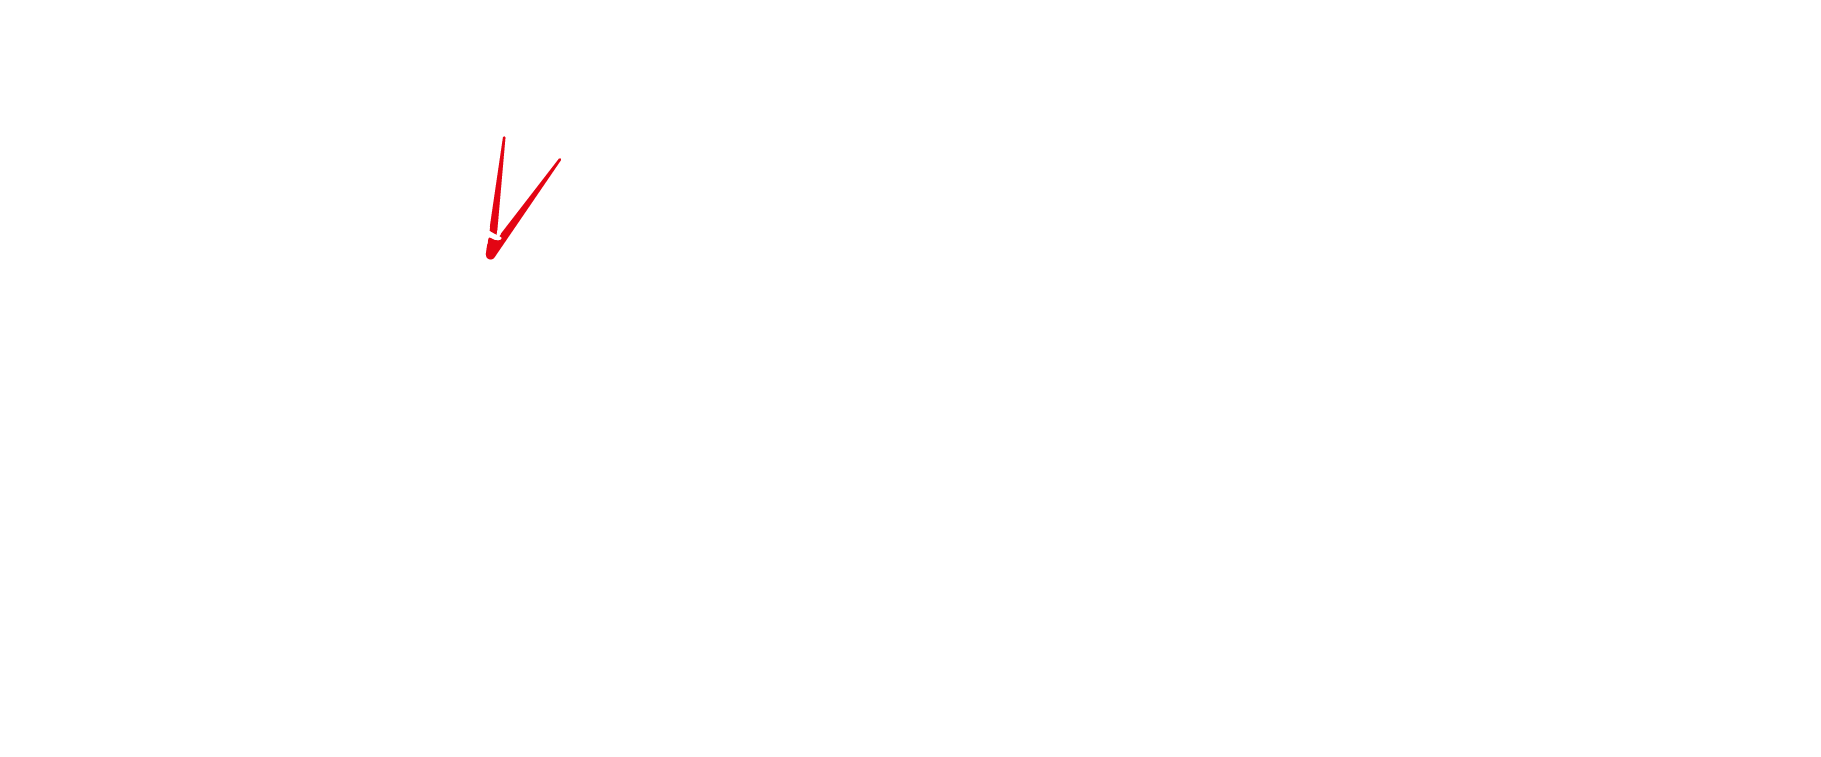 ICAEW Logo